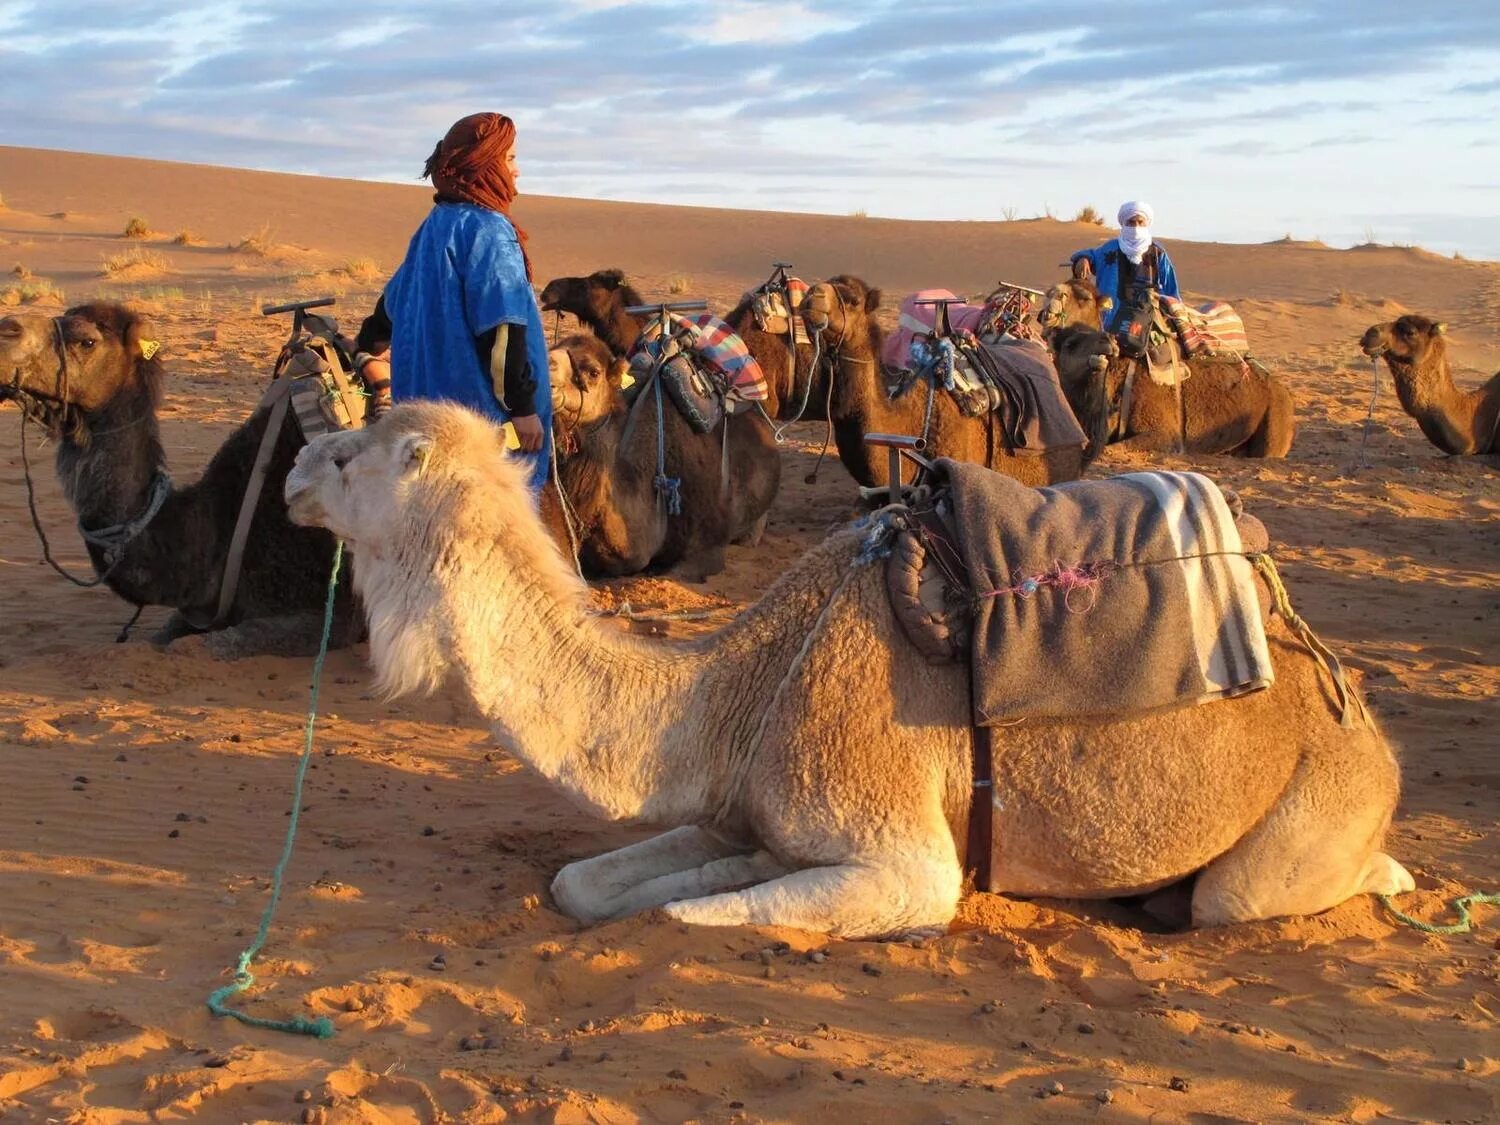 Бедуины Марокко. Караван в пустыне Каракум. Караваны верблюдов с бедуинами. Караван марокканских верблюдов дромедаров. Караван картинка